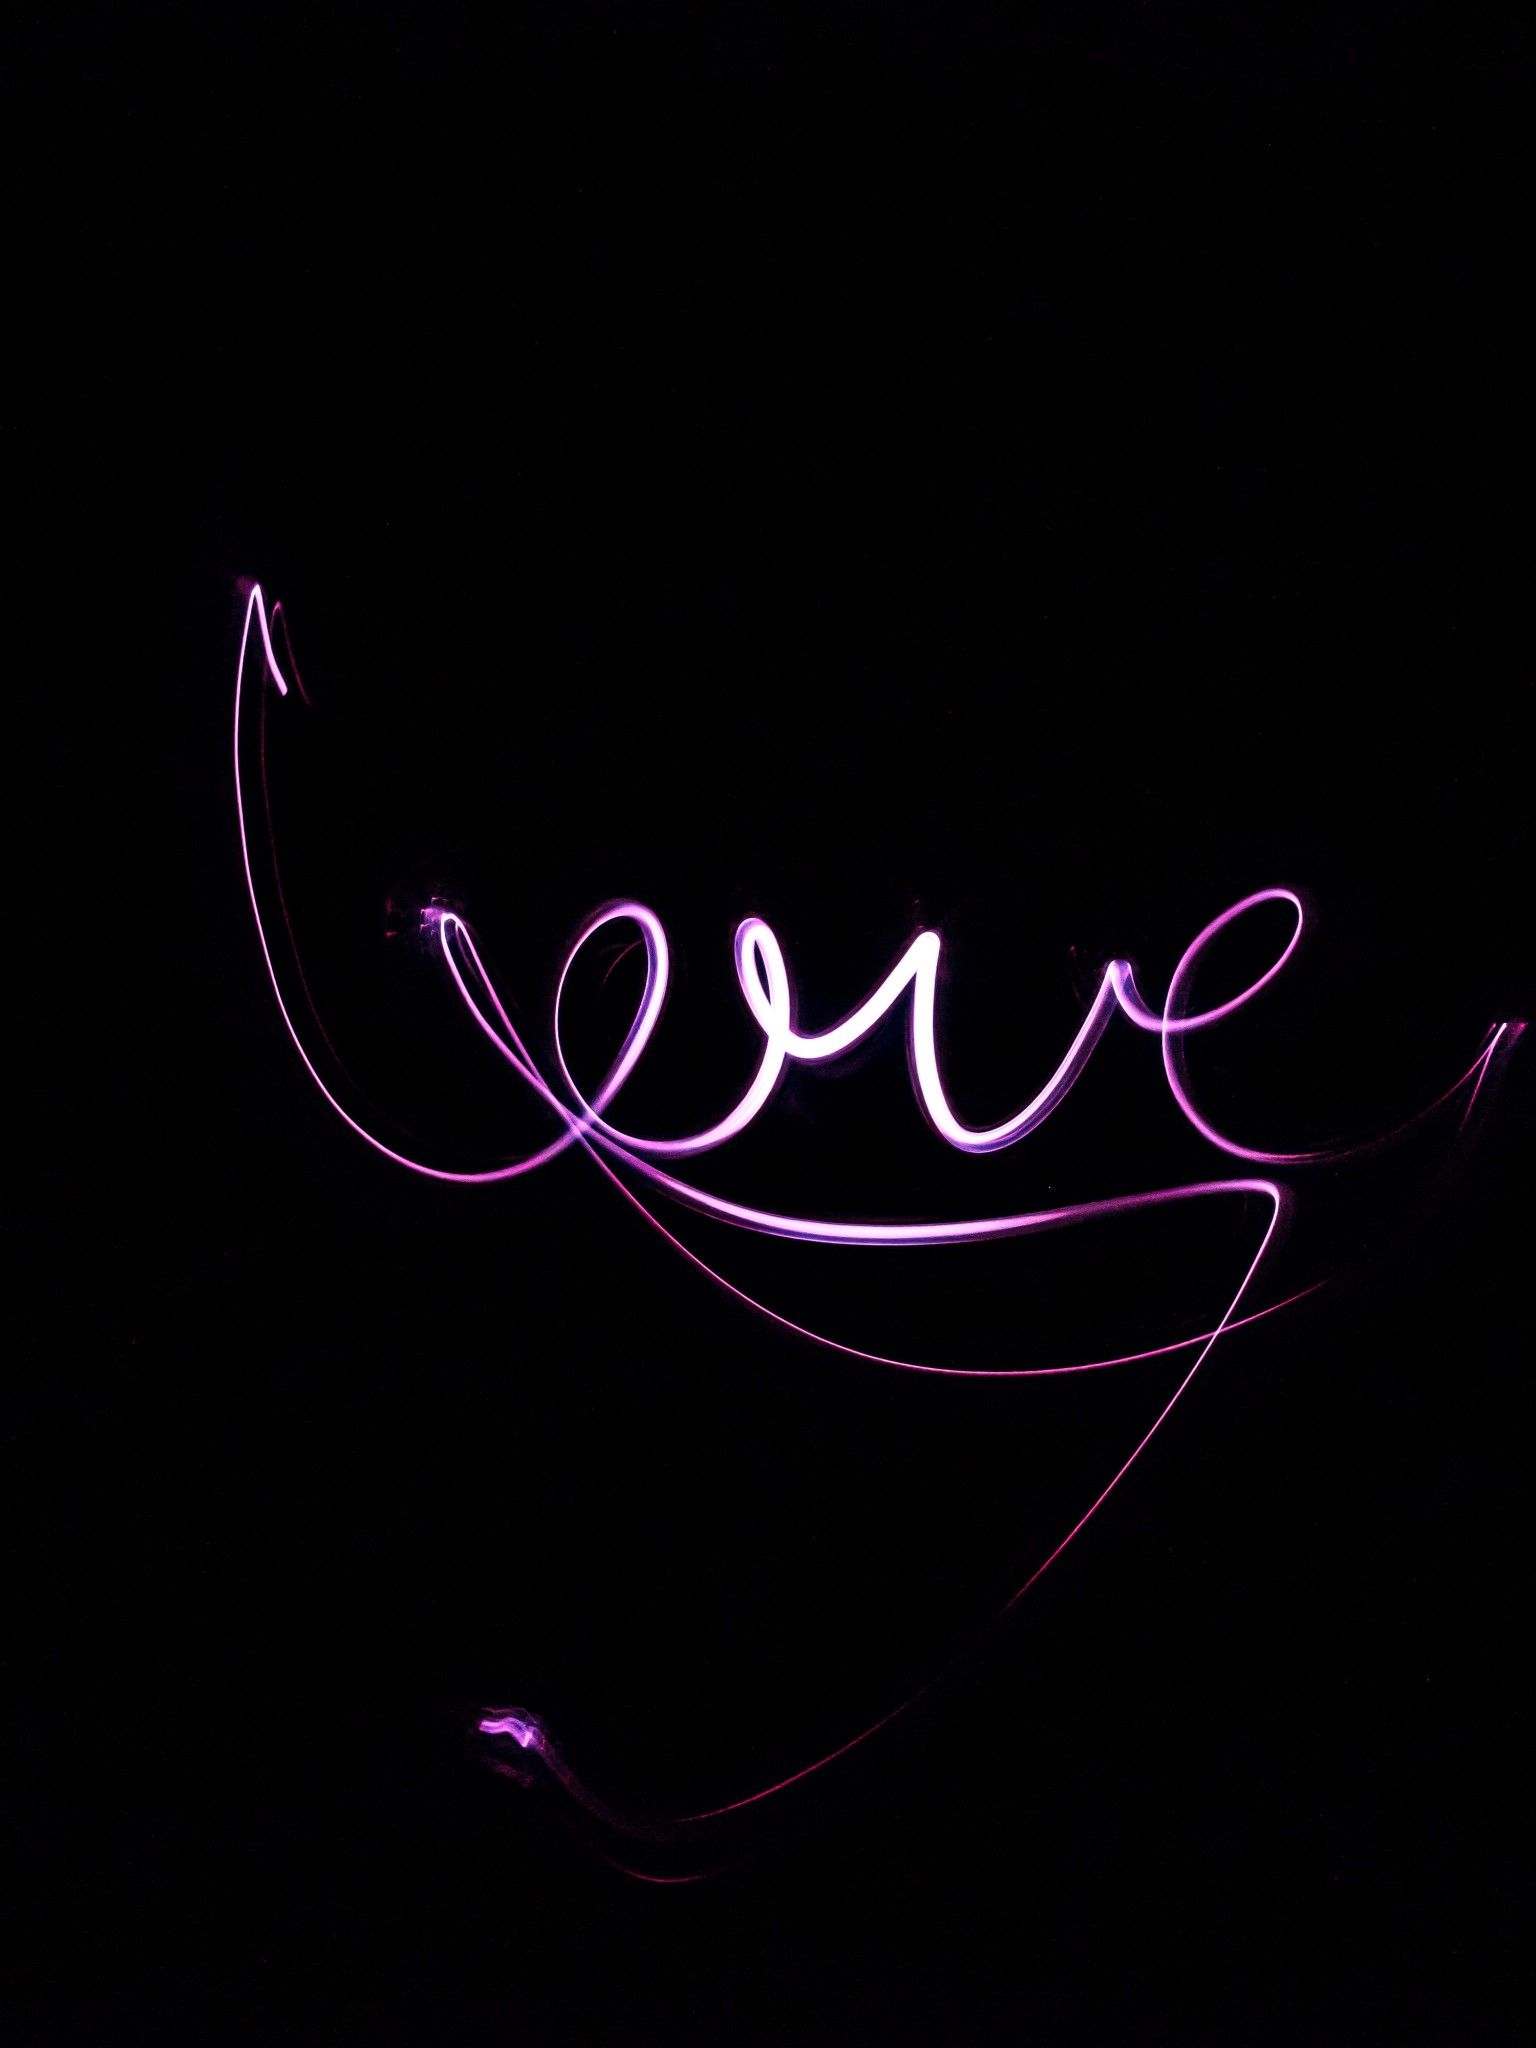 Love Text 4K Wallpaper, Black Background, Purple Lights, Valentines Day, Neon Light, 5K, Black Dark